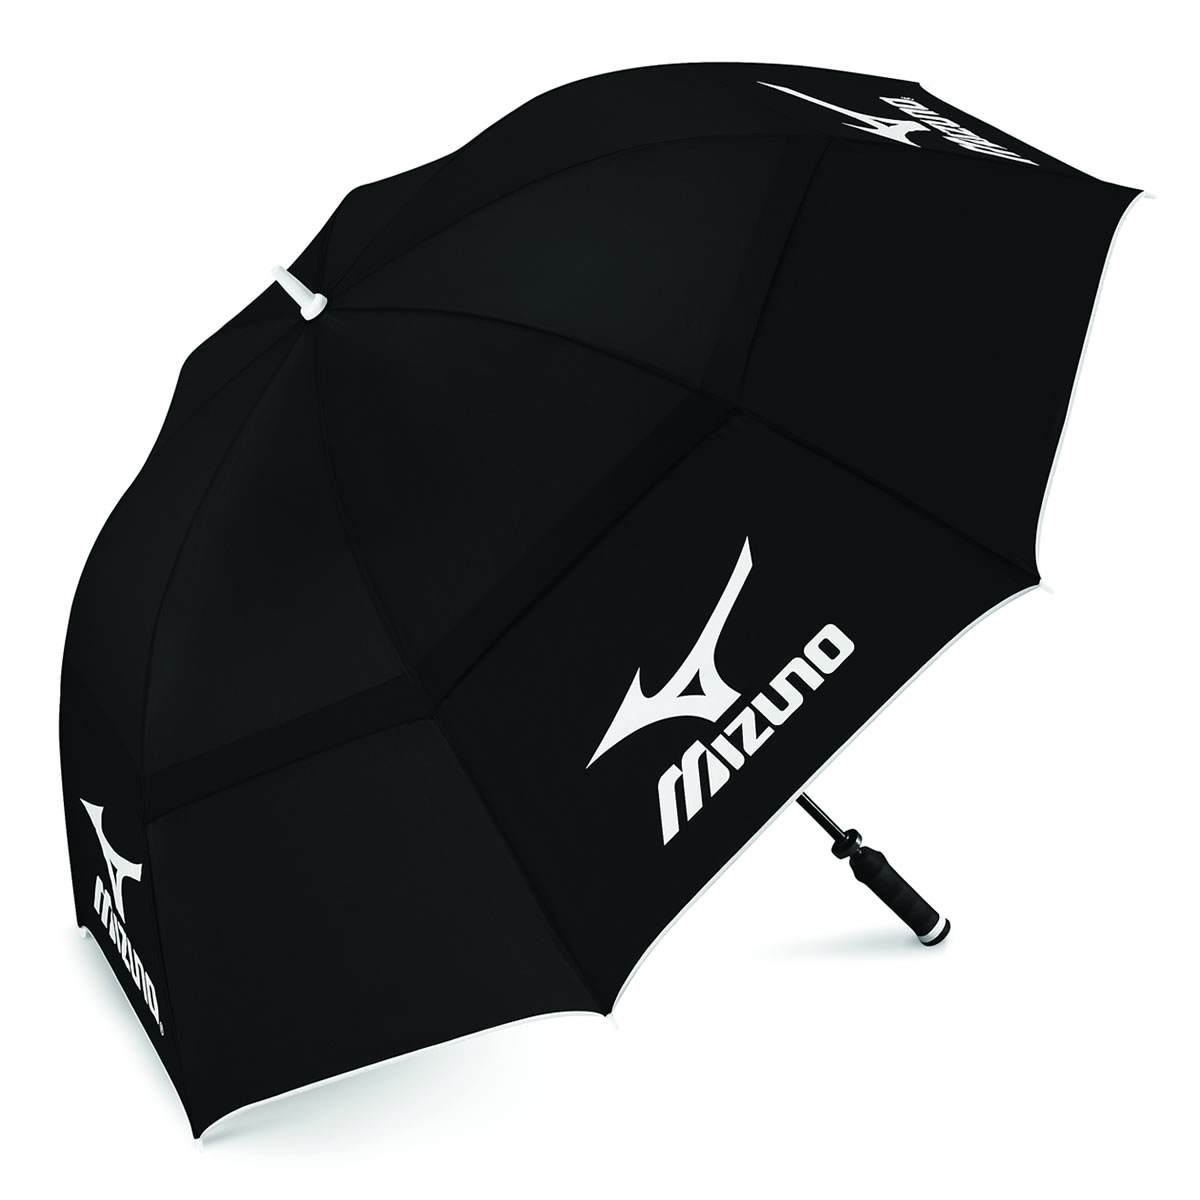 Twin Canopy Golf Umbrella Black/White